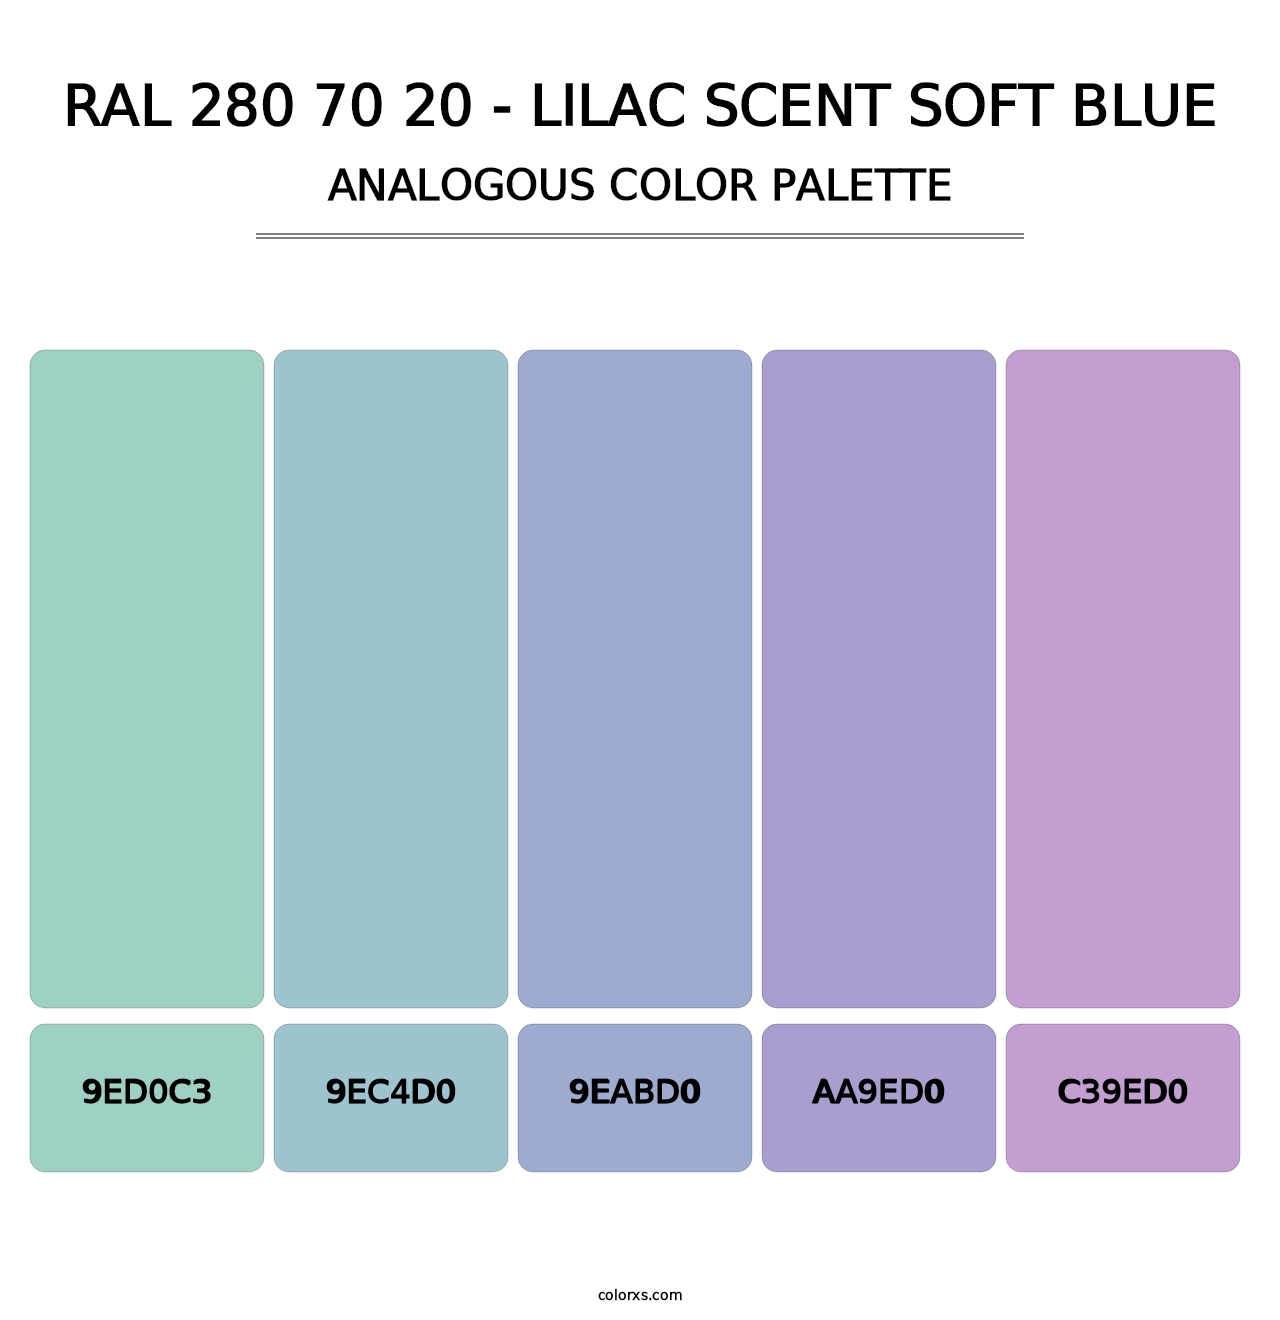 RAL 280 70 20 - Lilac Scent Soft Blue - Analogous Color Palette